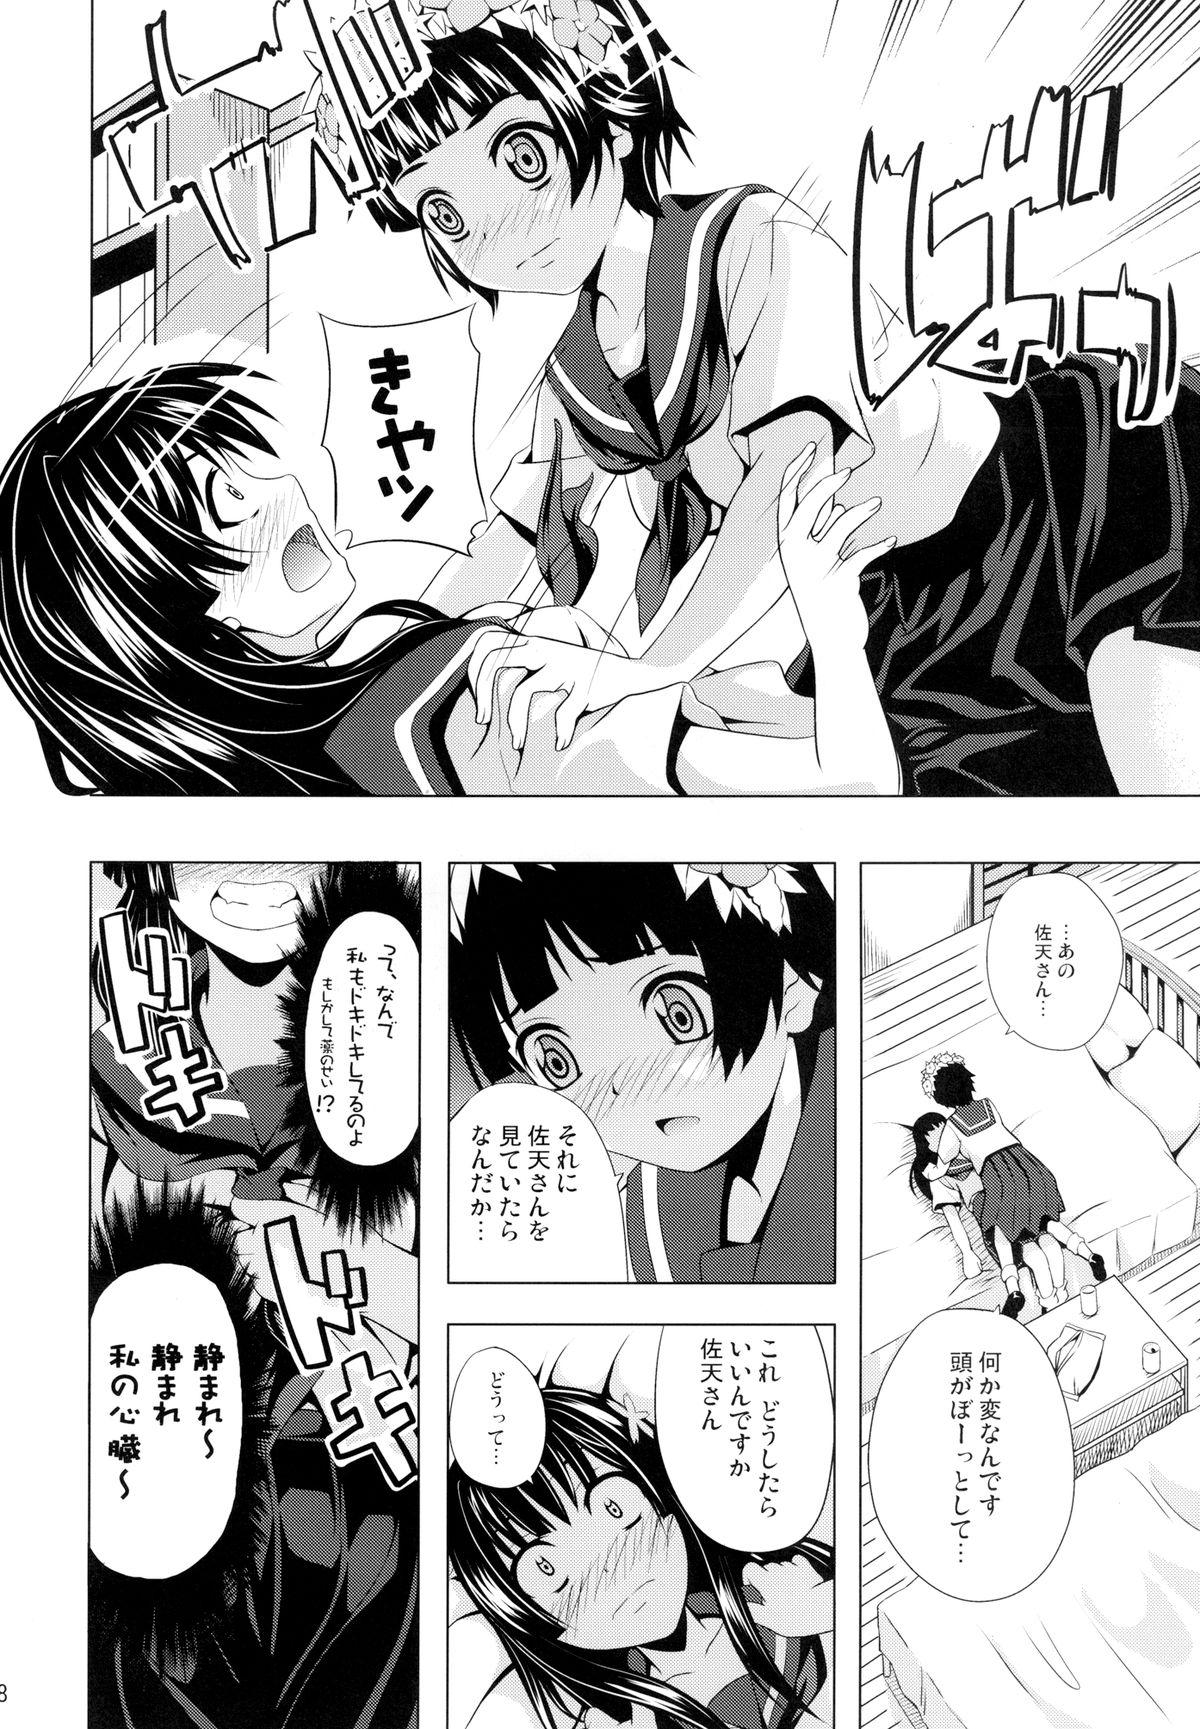 Booty Uiharu no U Saten no Sa - Toaru kagaku no railgun Hugecock - Page 8